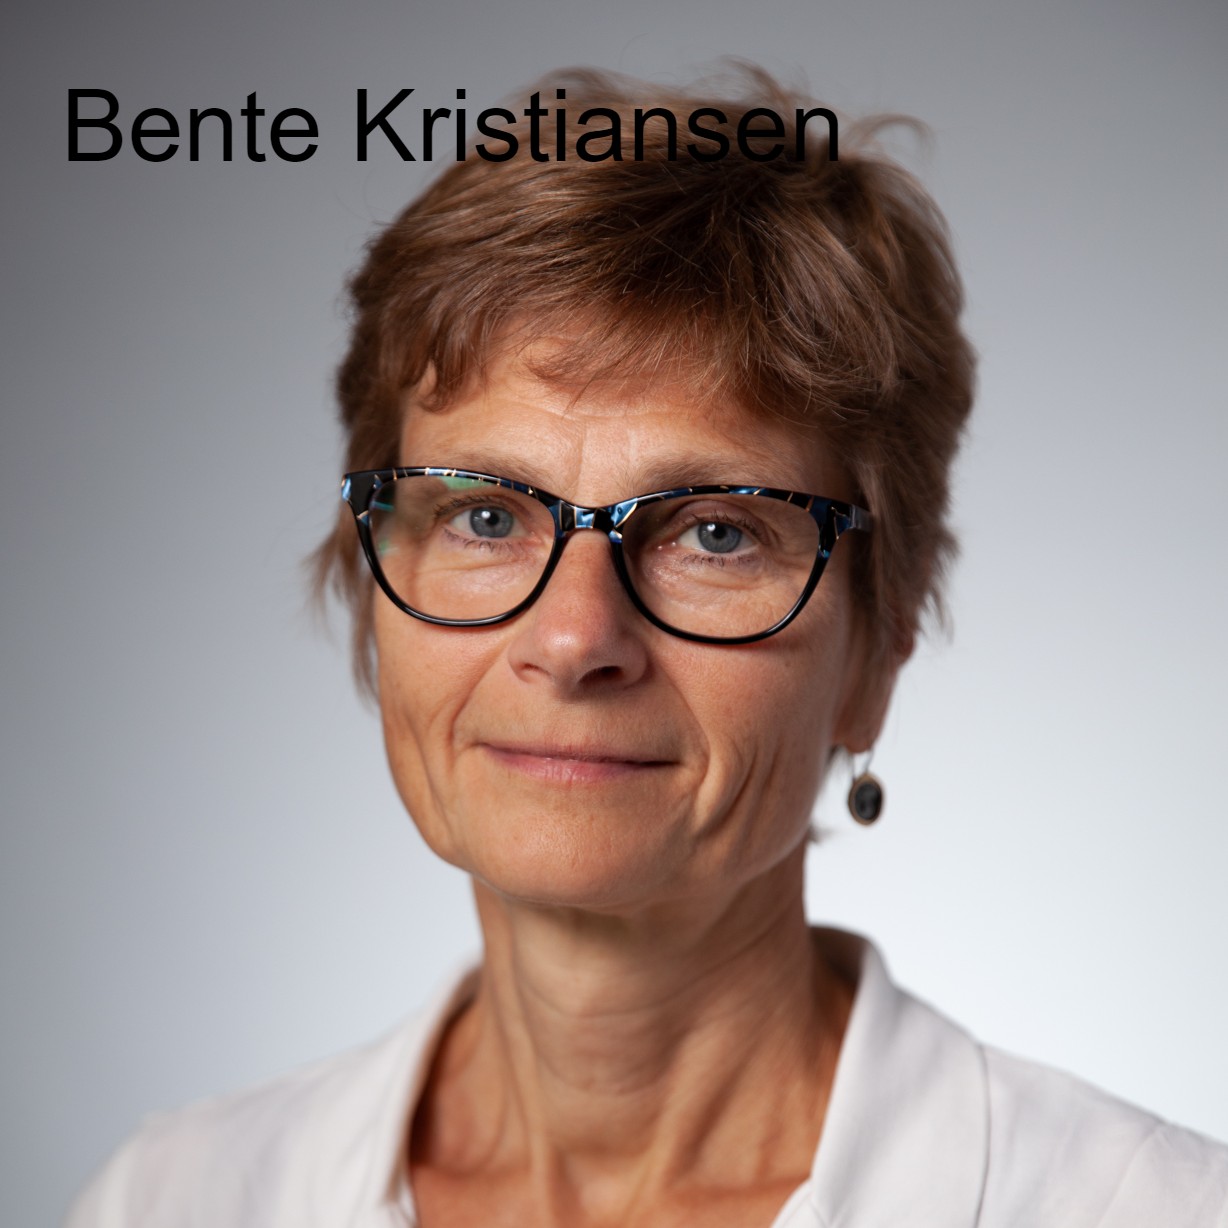 Akademisk kyndighet (academic literacy) v. Bente Kristiansen